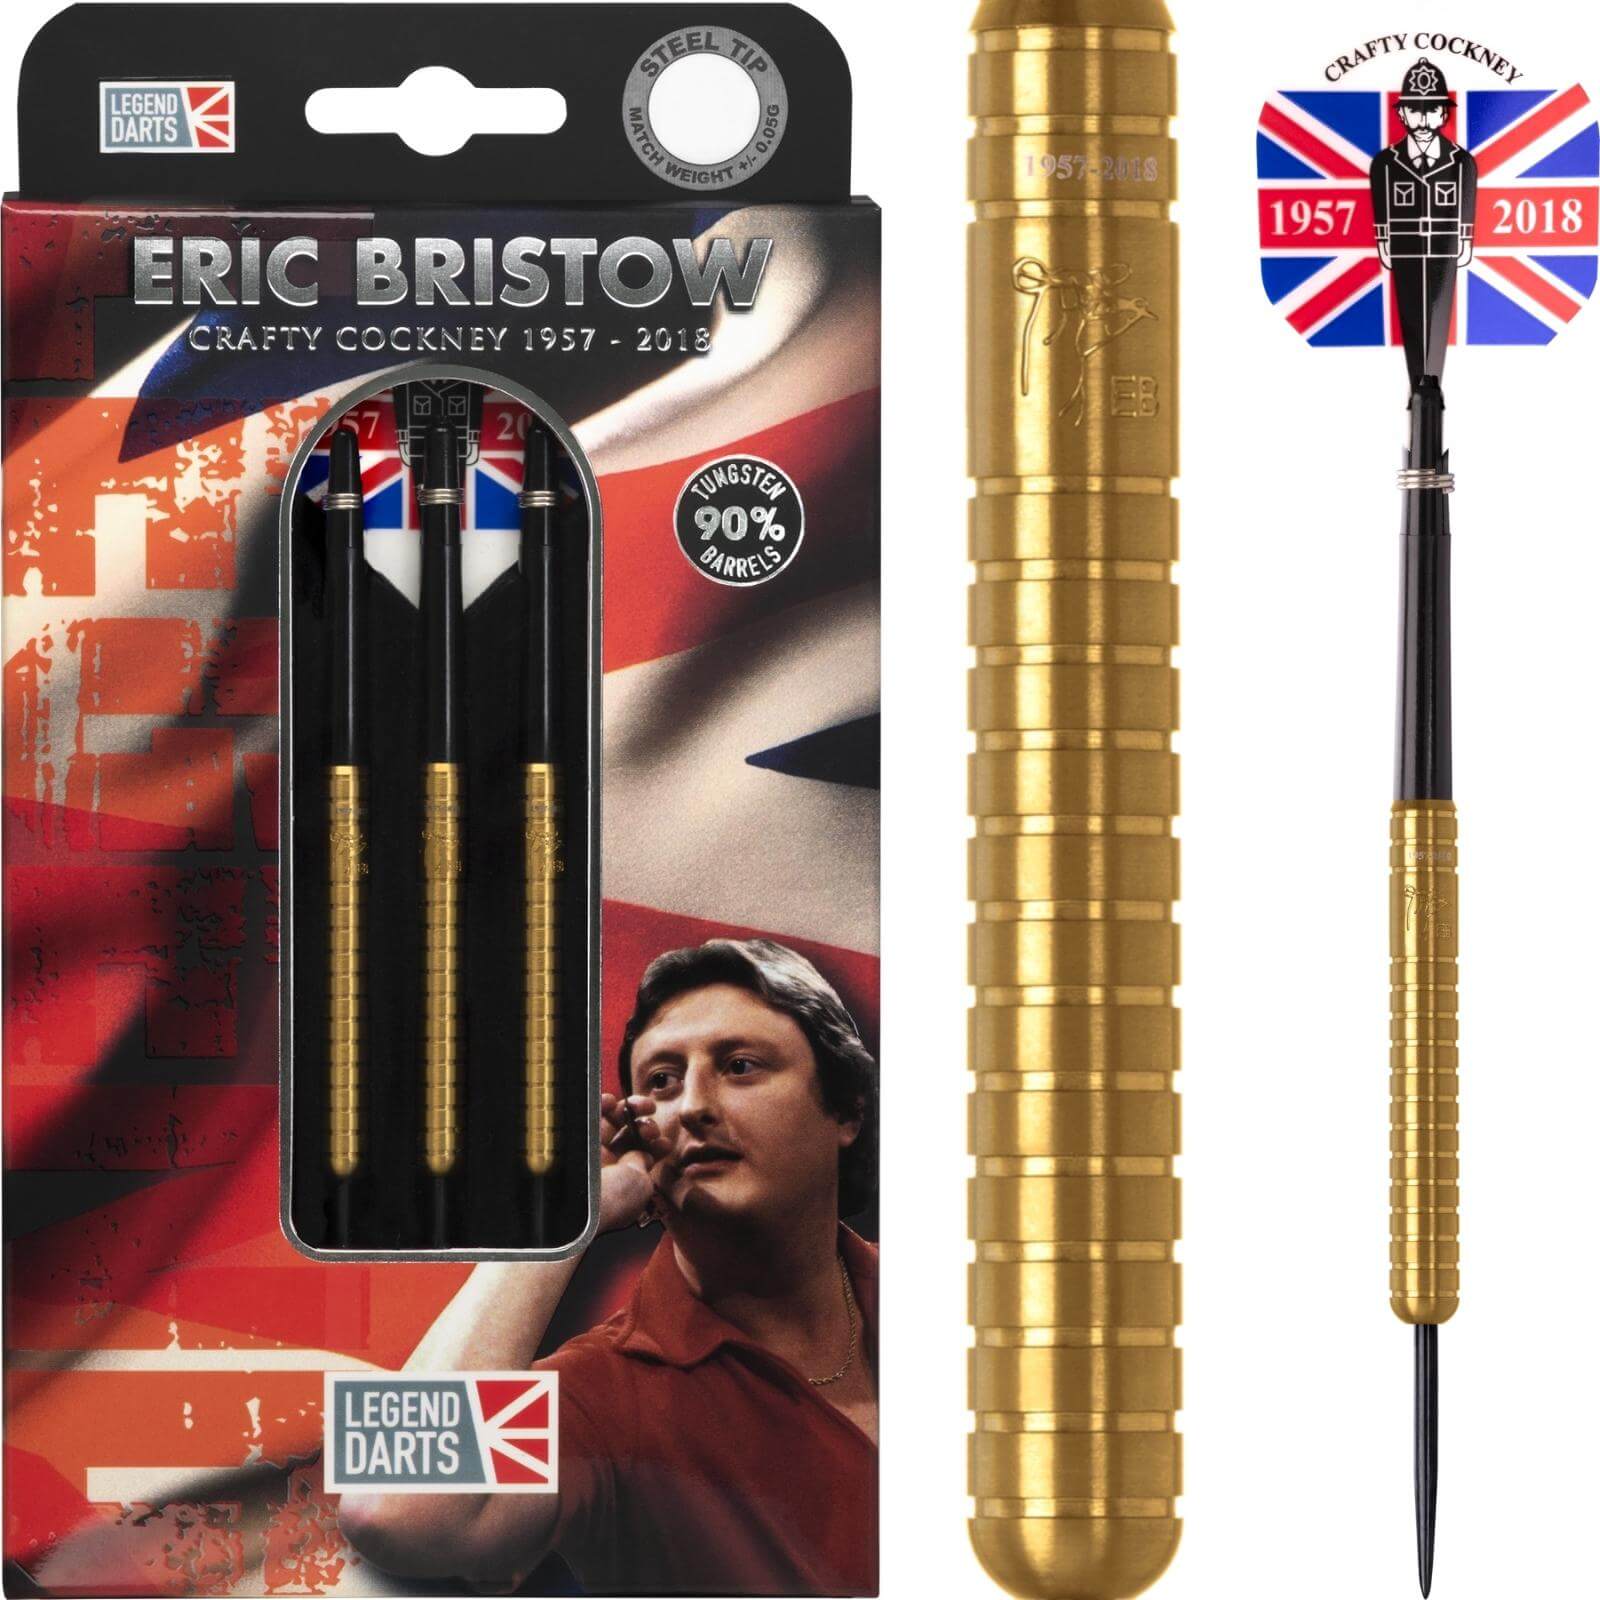 Darts - Legend Darts - Eric Bristow Gold Darts - Steel Tip - 90% Tungsten - 22g 24g 26g 